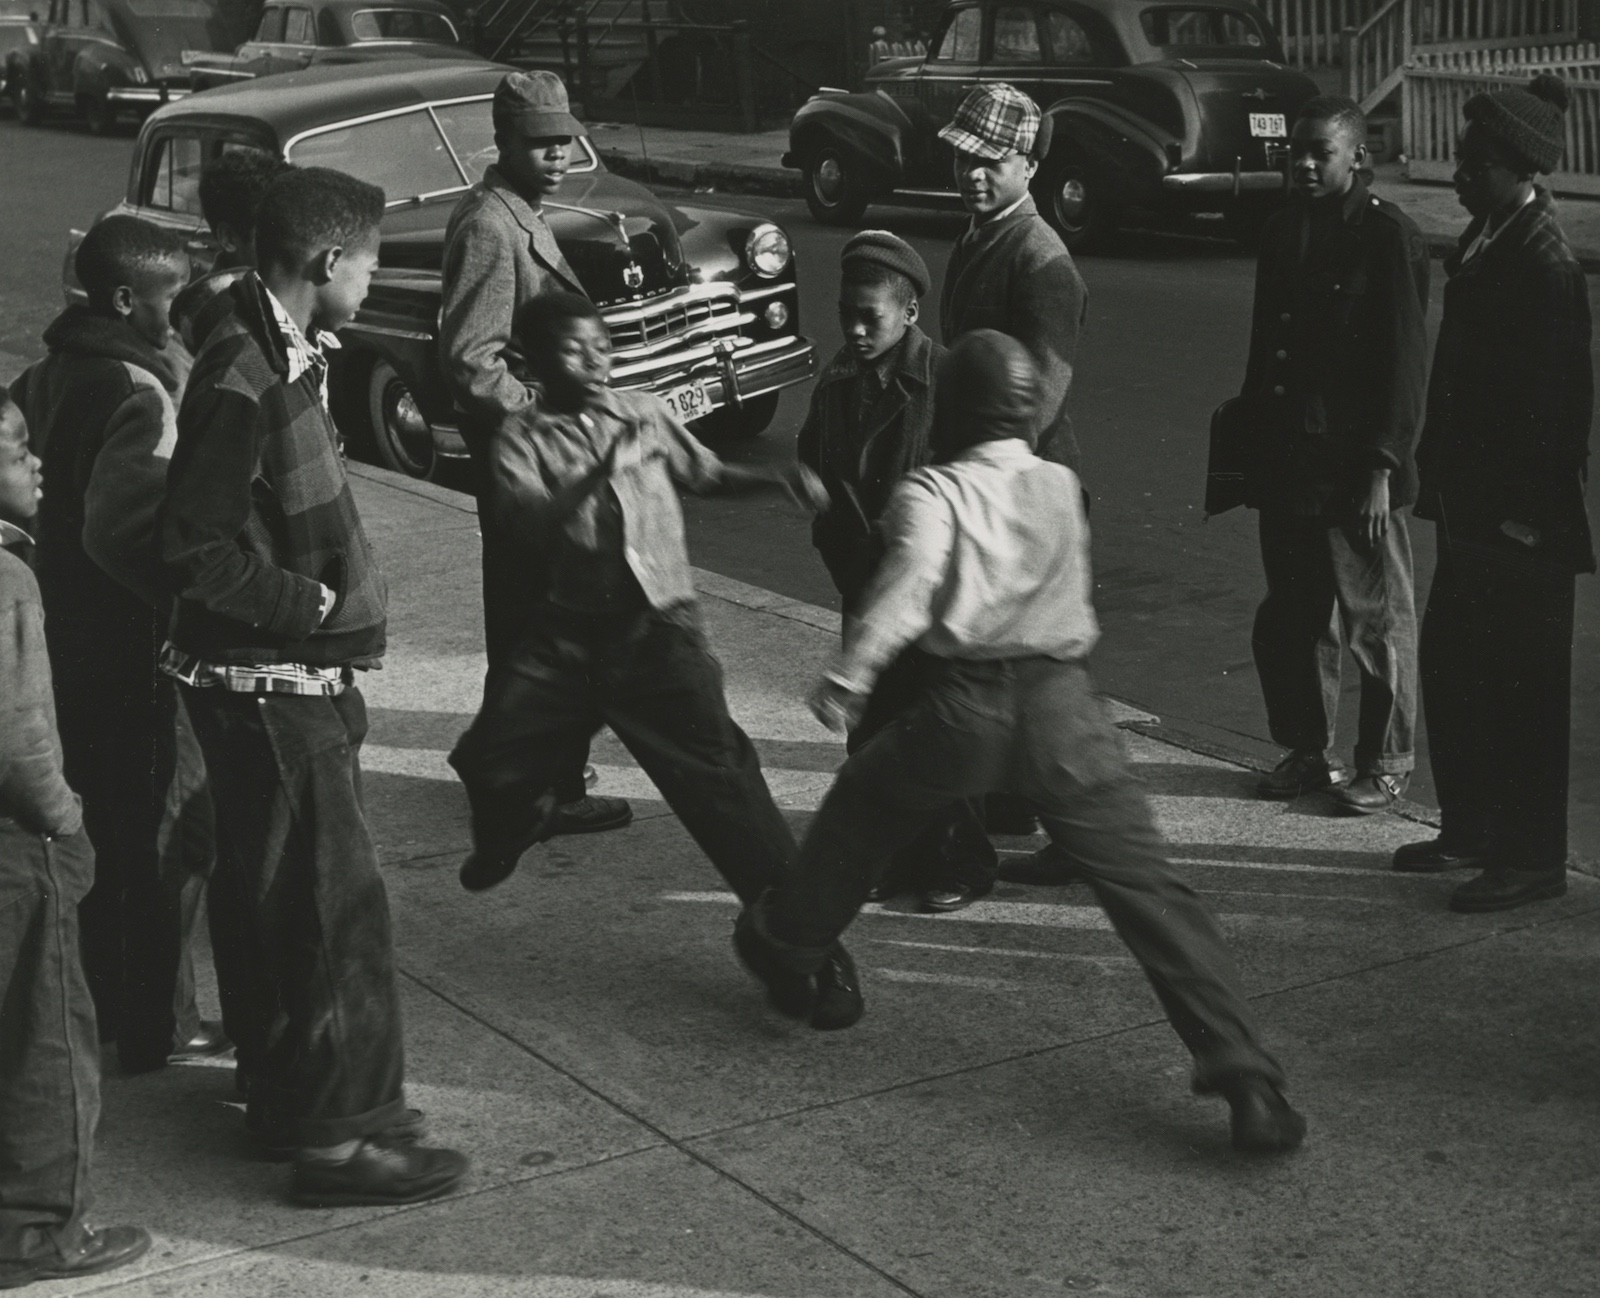 Children Fighting in Street, Chicago, 1950